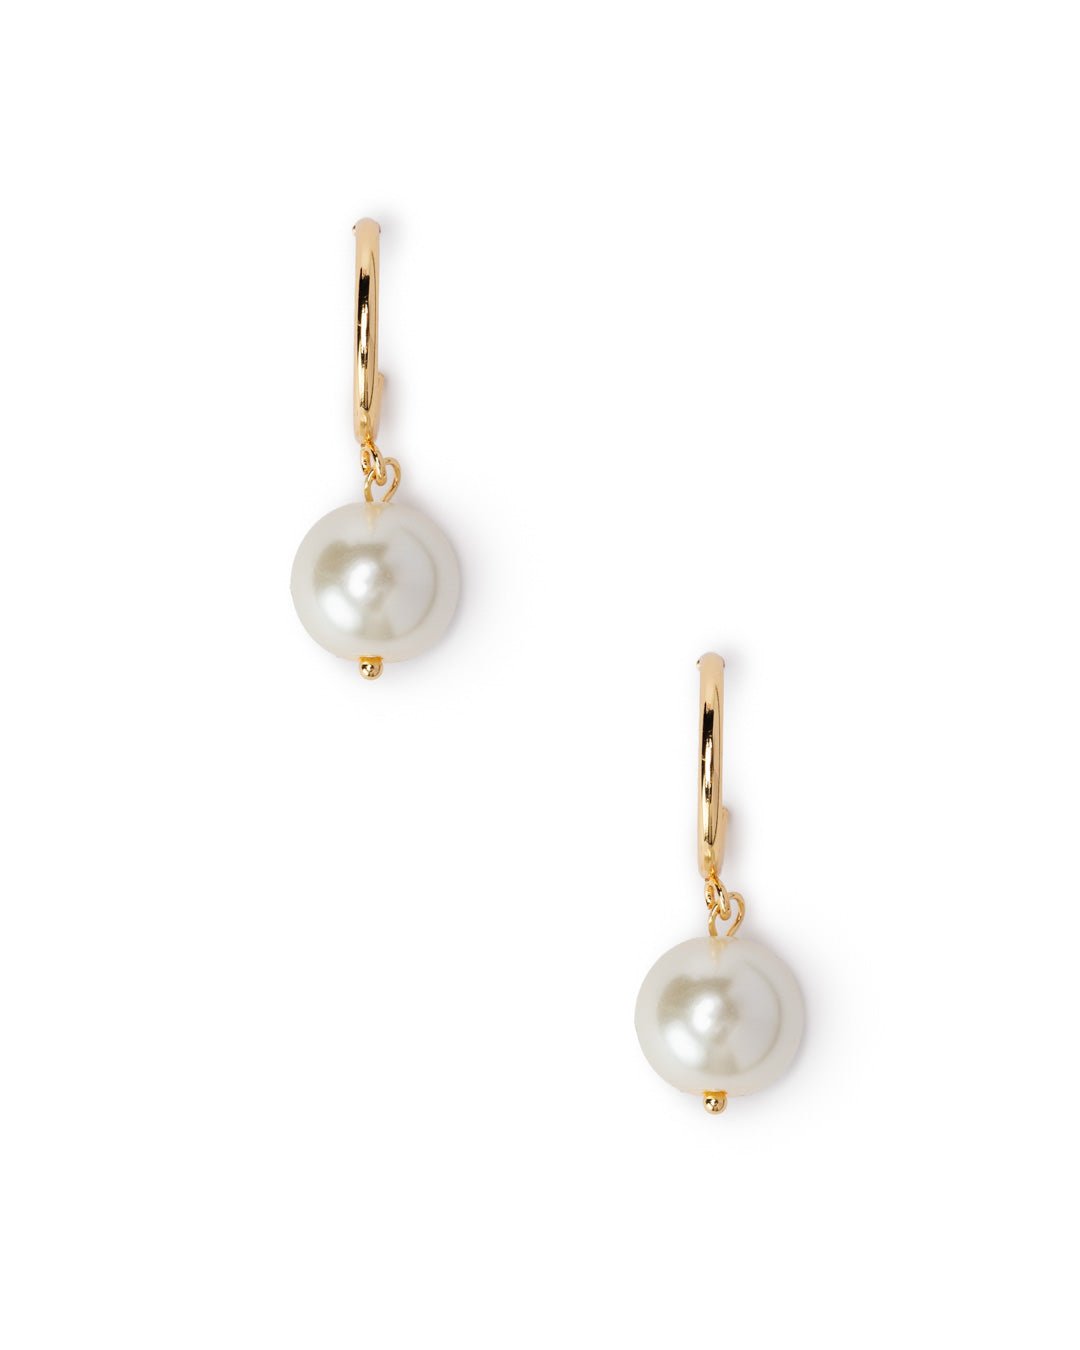 Orecchini con cerchio e perla pendente in vetro bianca - Mya Accessories